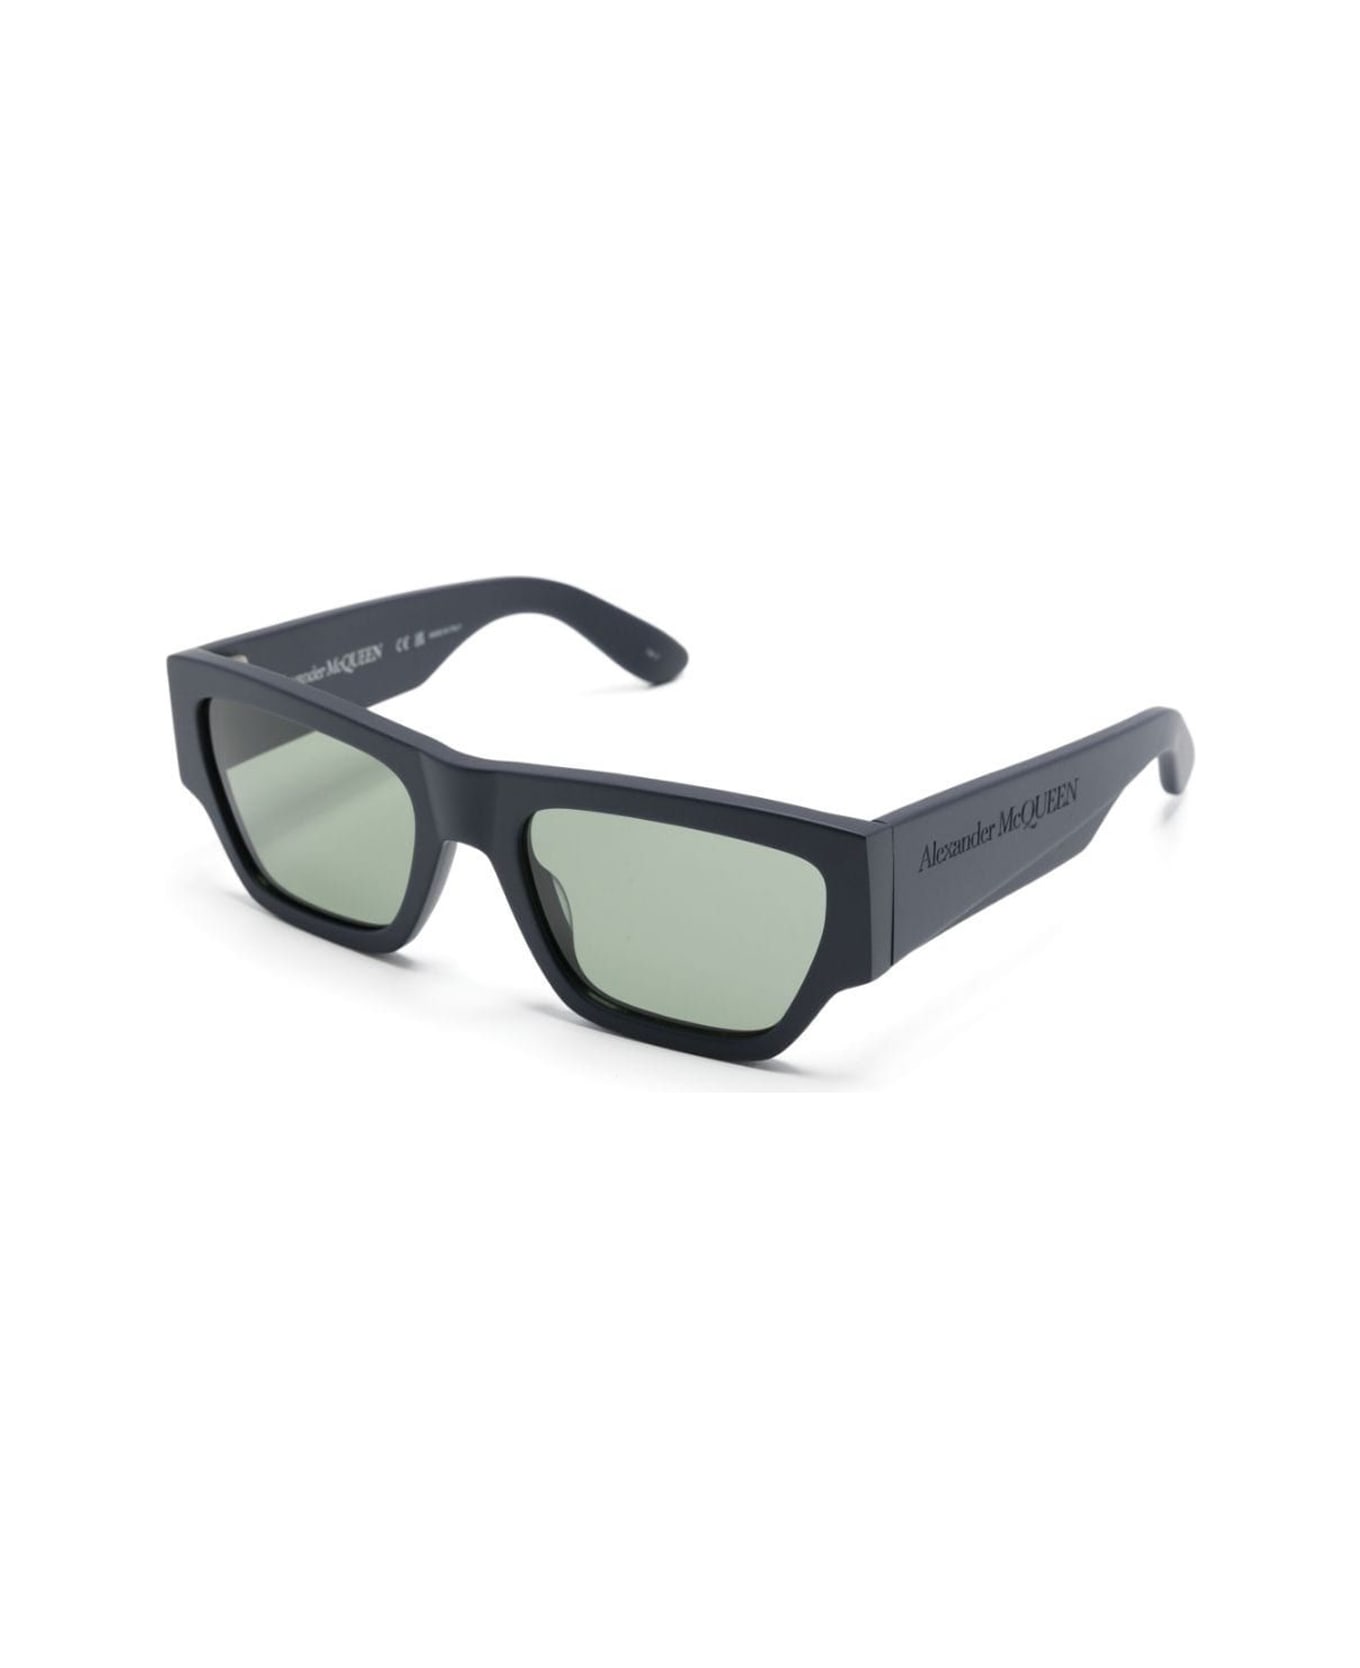 Alexander McQueen Eyewear Mcqueen Angled Sunglasses - Nero